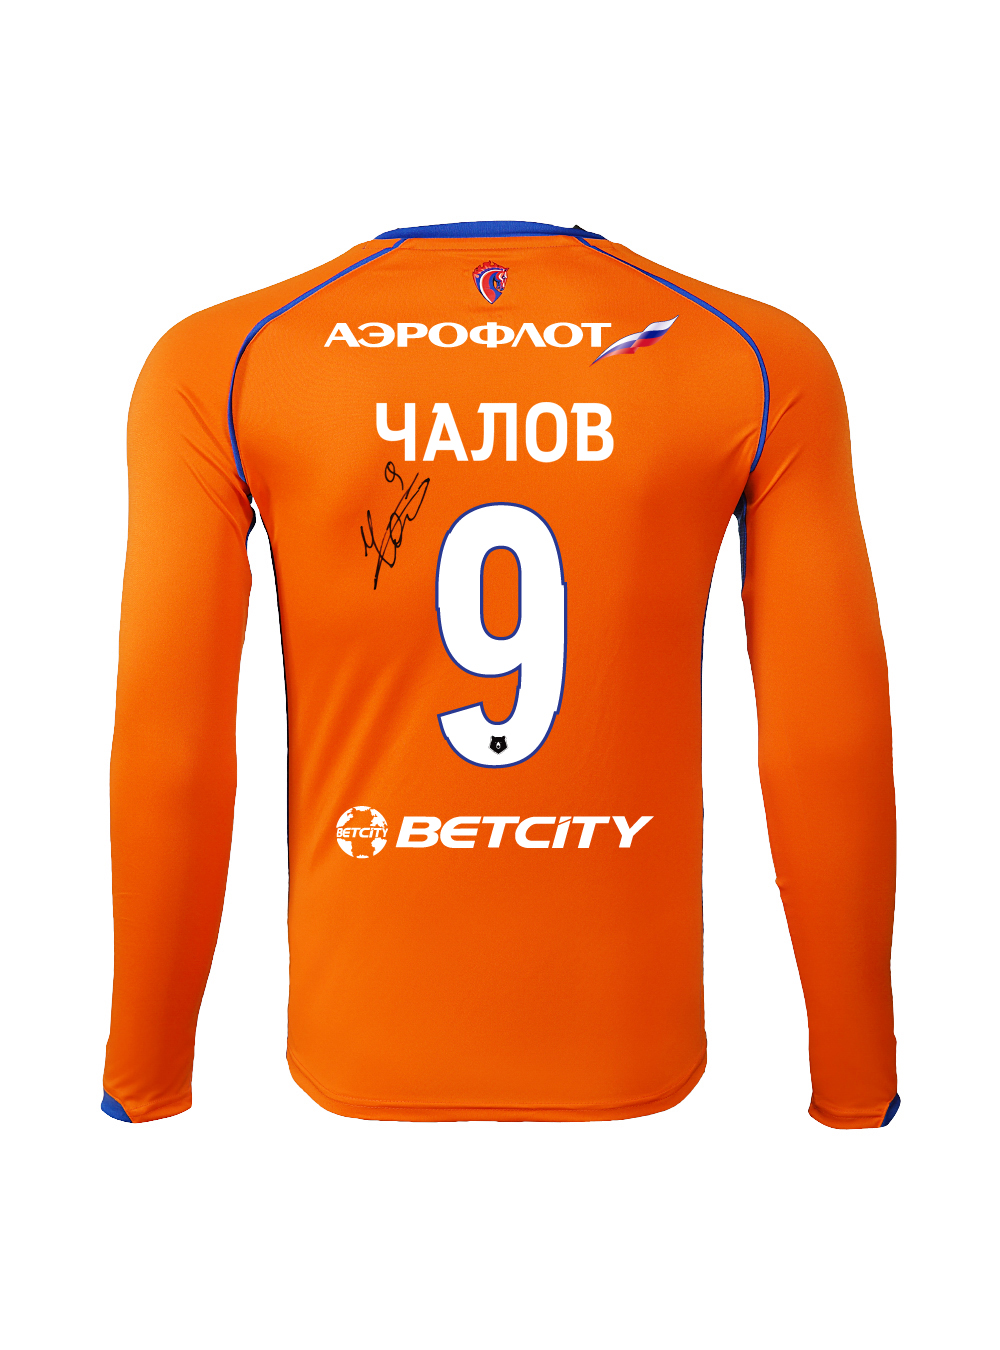 Купить Футболка игровая резервная с длинным рукавом с автографом ЧАЛОВА (XL) по Нижнему Новгороду